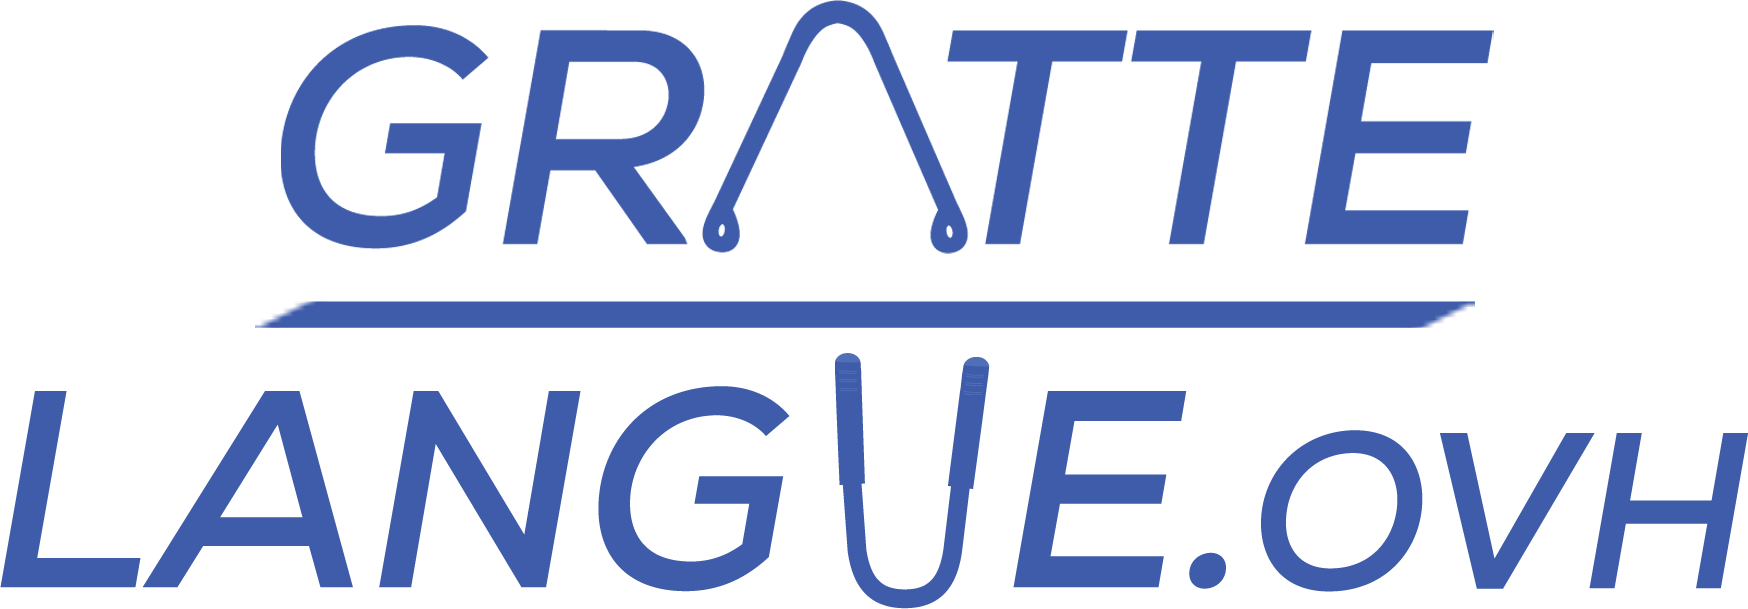 logo gratte-langue.ovh mobile